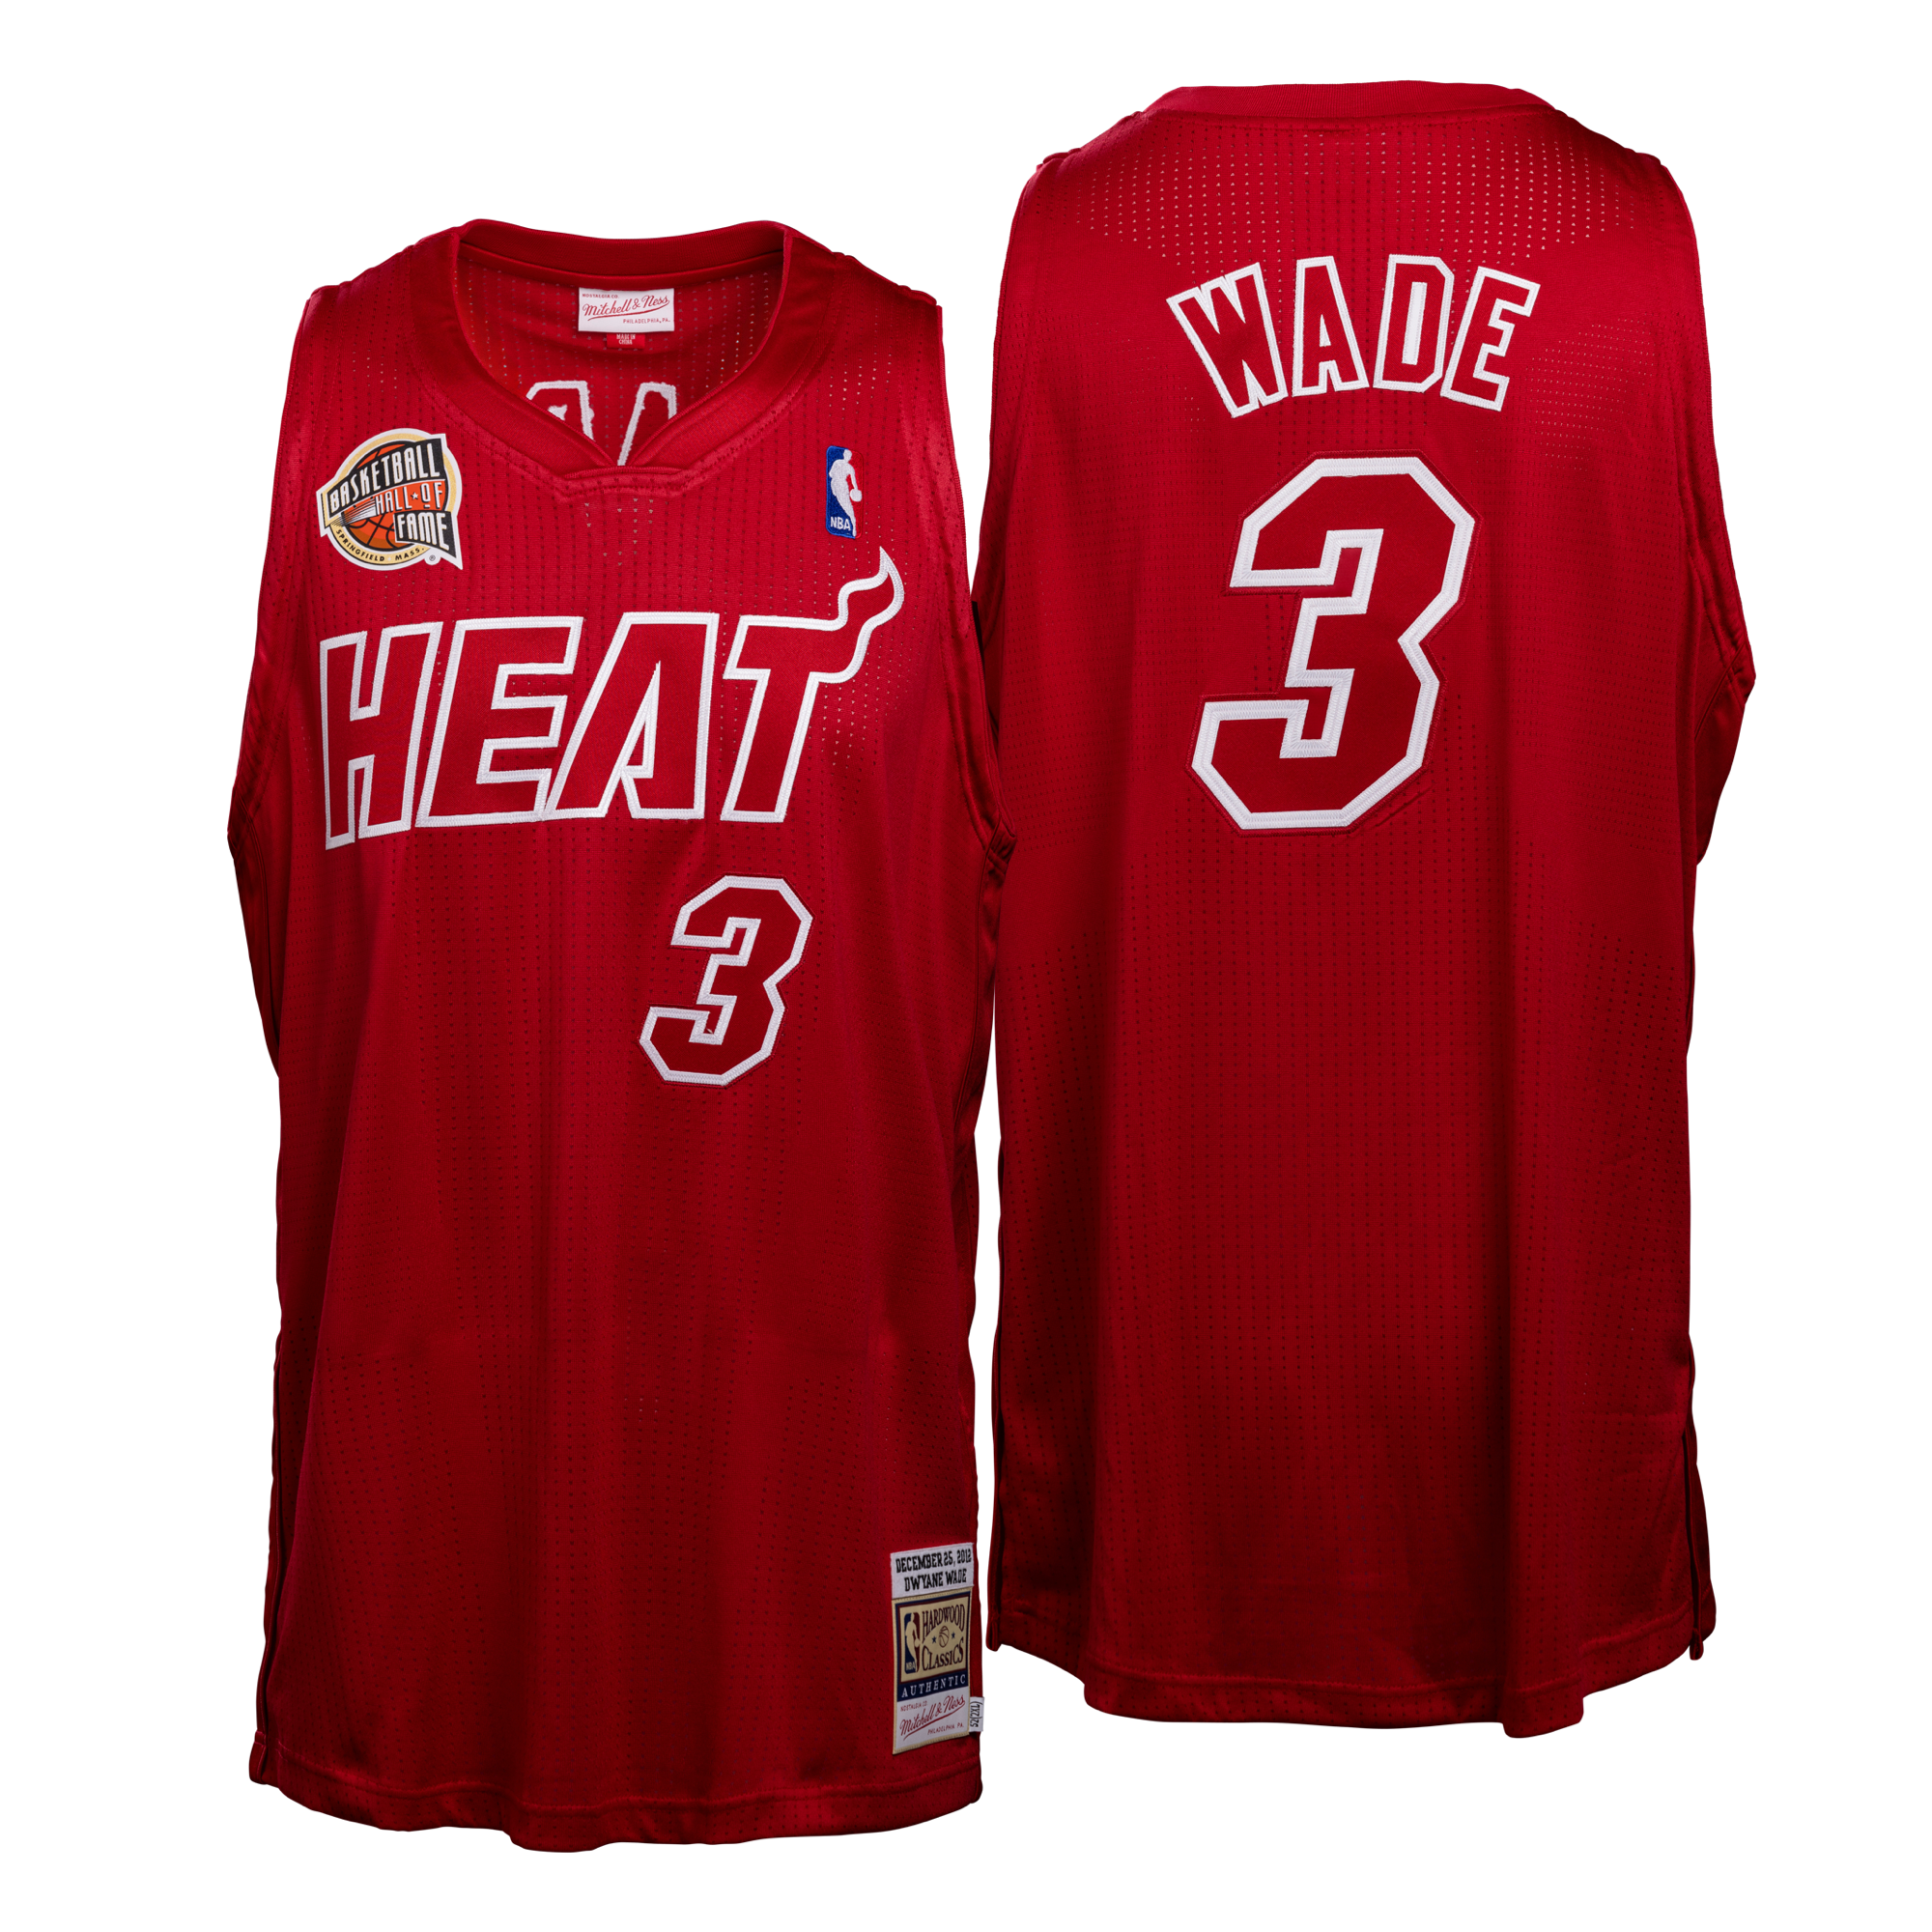 Mitchell & Ness Dwayne Wade Miami Heat '12-'13 Jersey Black